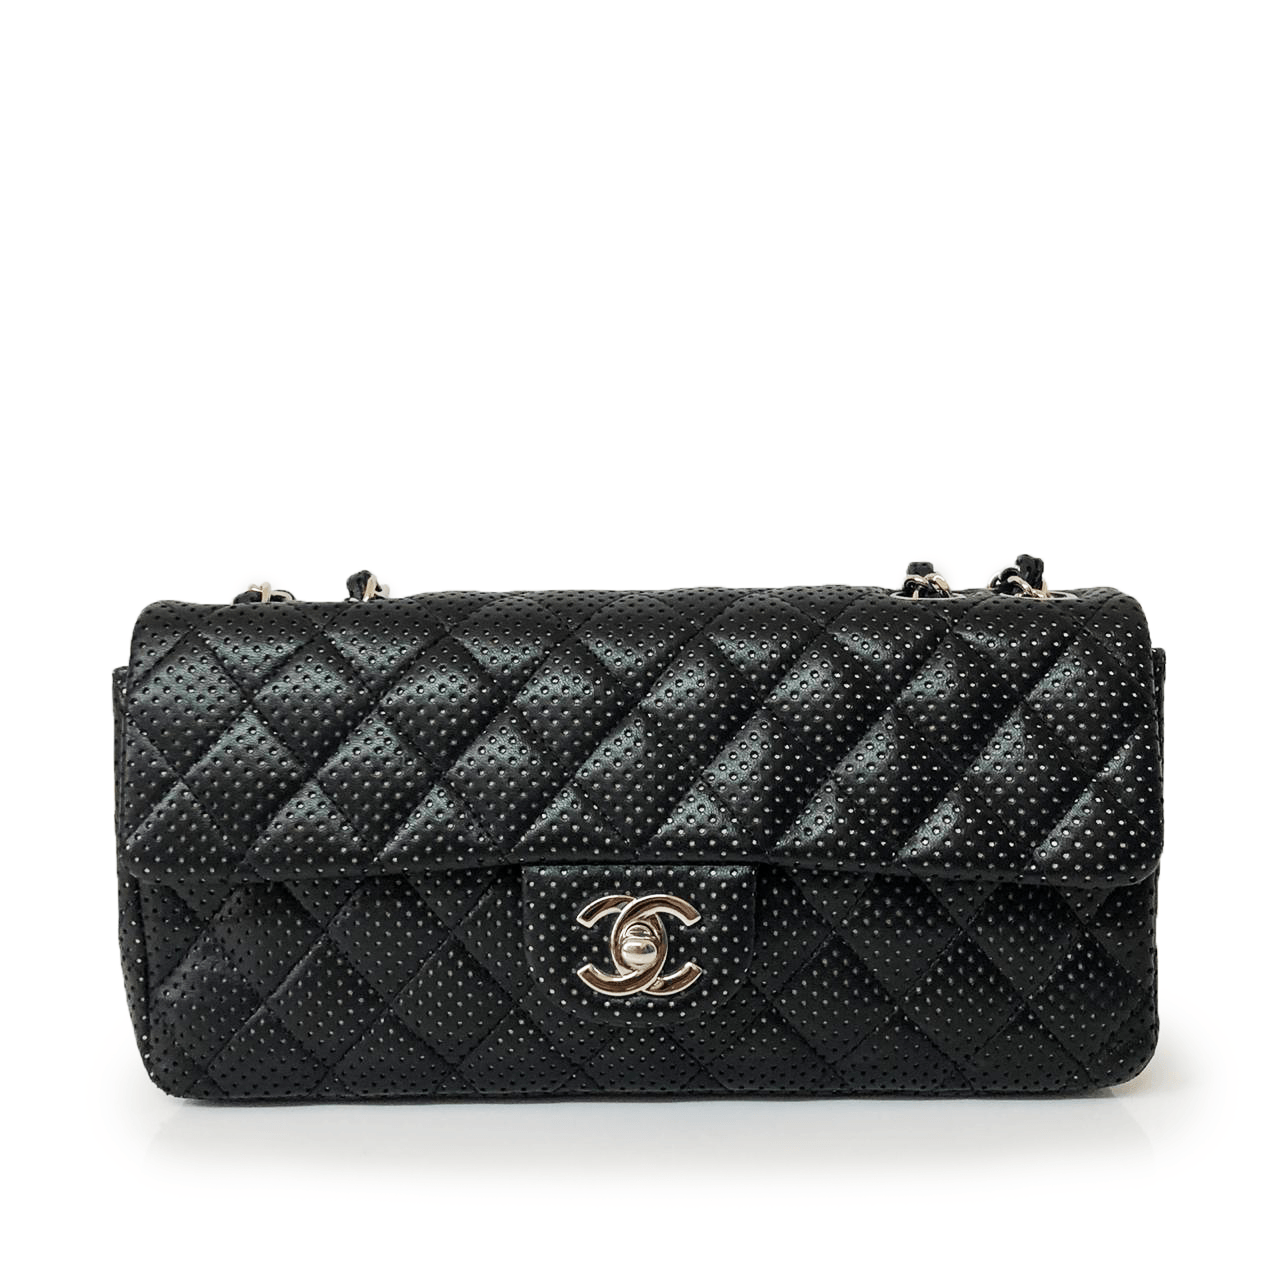 Chanel Perforated Black Leather Shoulder Handbag